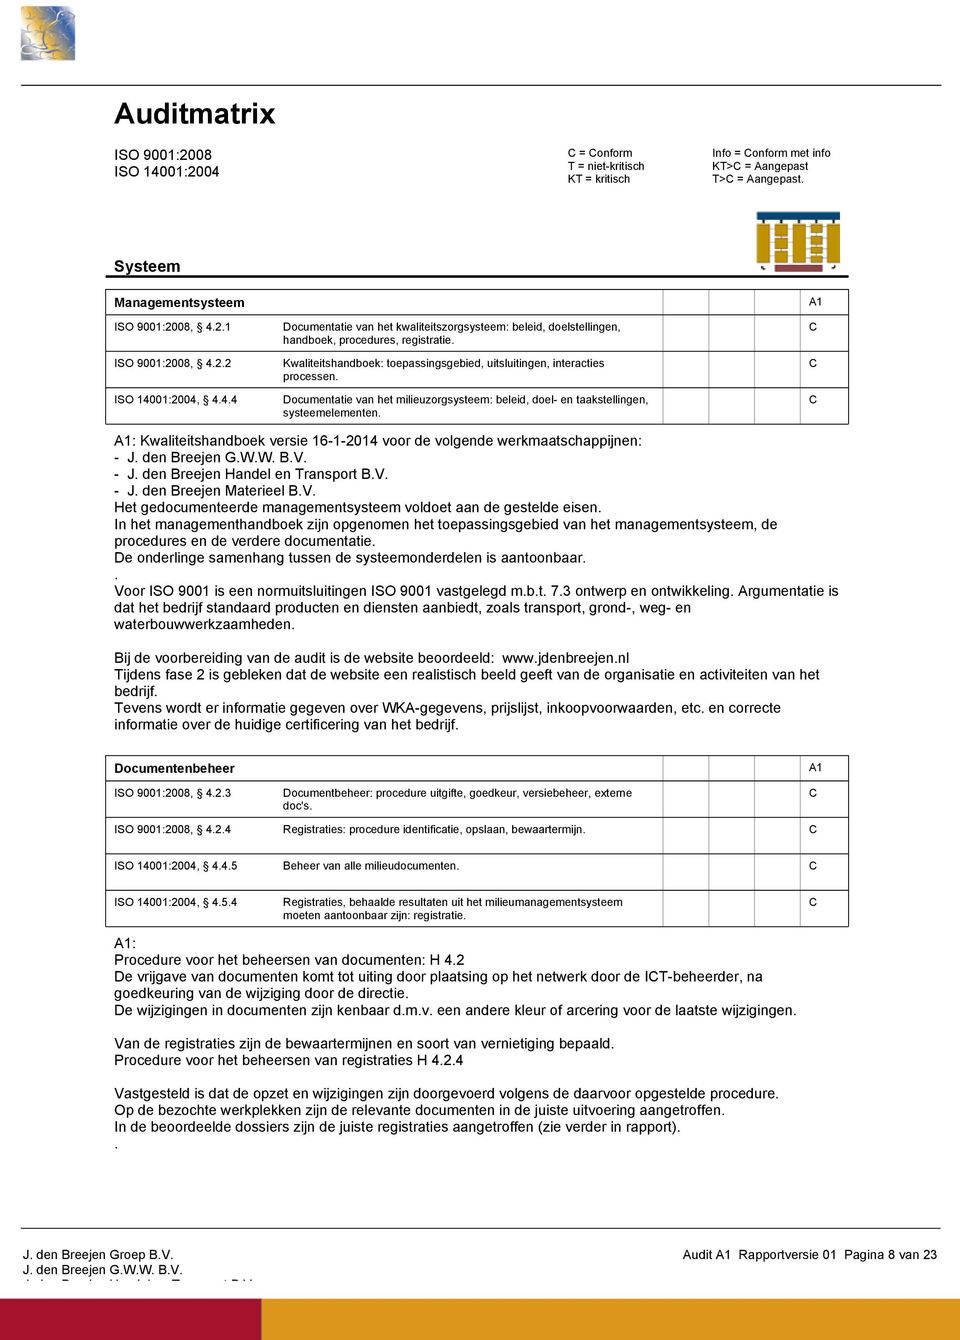 Kwaliteitshandboek versie 1612014 voor de volgende werkmaatschappijnen Het gedocumenteerde managementsysteem voldoet aan de gestelde eisen.